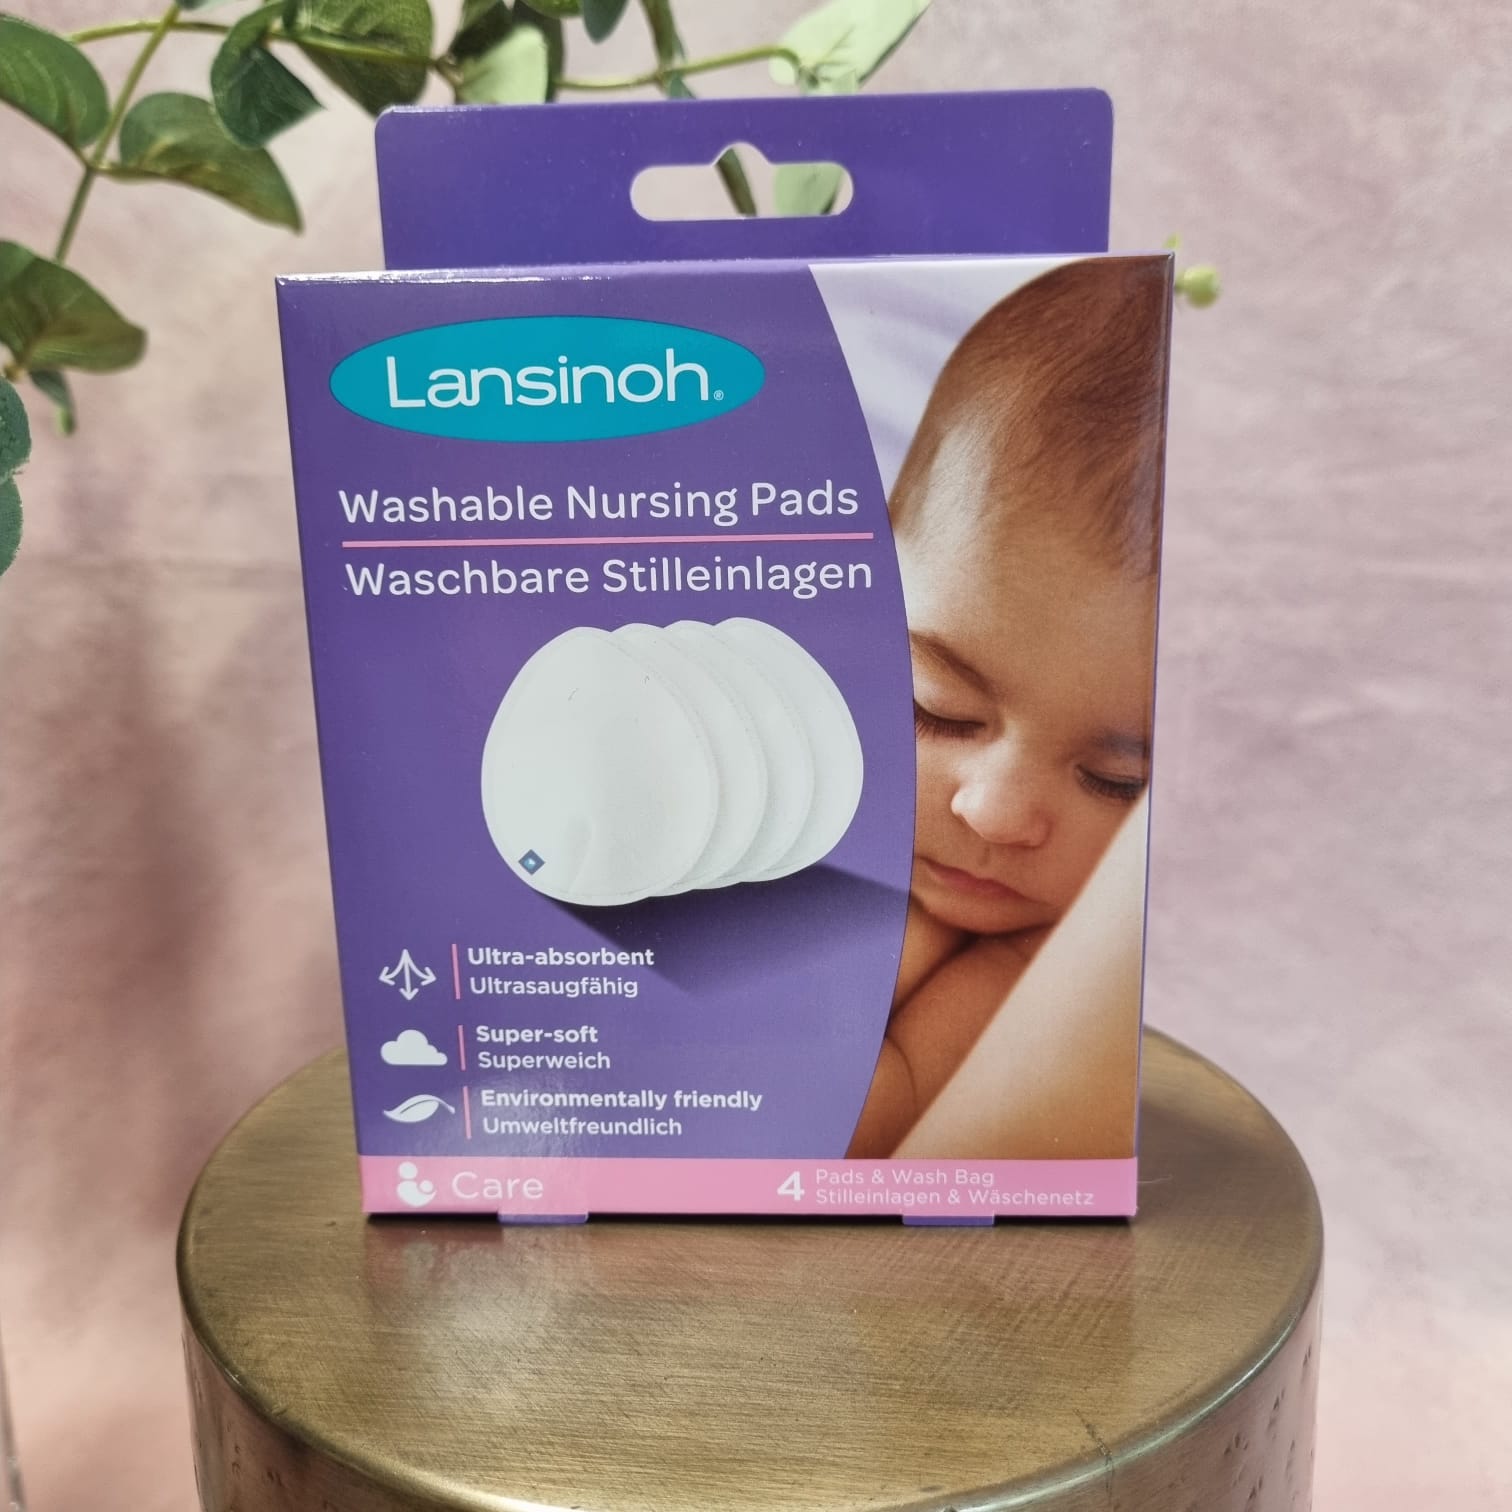 Lansinoh Washable Nursing Pads review